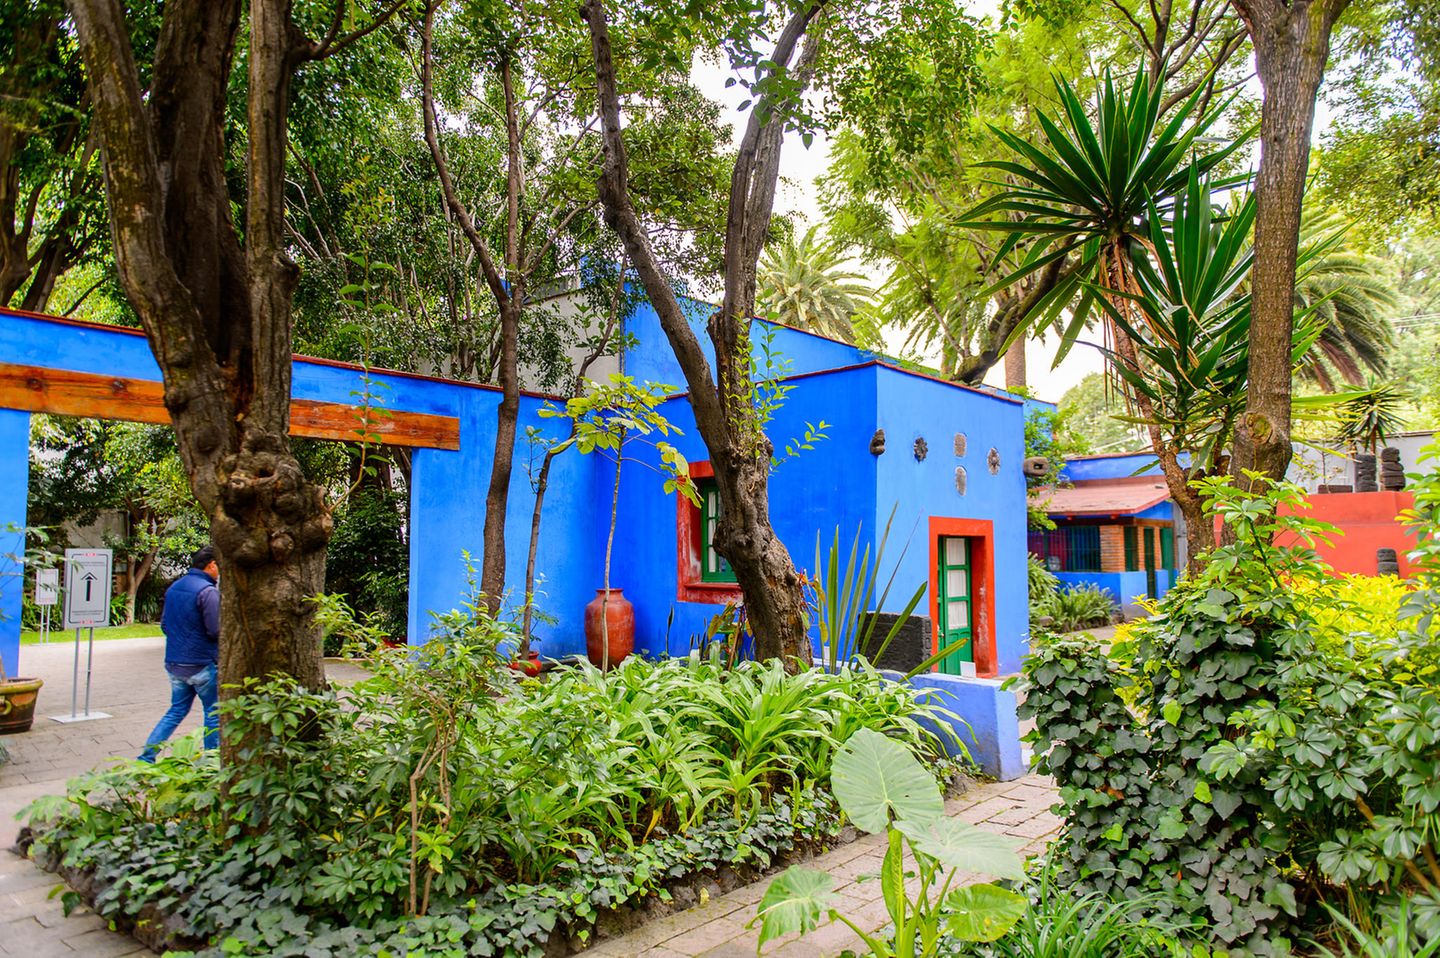 Die Künstlerin Frida Kahlo (1907–1954) ist in den letzten Jahren zur Ikone der Popkultur avanciert. Doch wo kommt sie eigentlich her? Fans pilgern in das Casa Azul nach Mexiko Stadt. Denn in dem wunderschönen blauen Haus wurde sie geboren und hier starb sie auch. Fast ihr ganzes Leben verbrachte sie hier, zeitweise mit ihrem Mann, dem Muralisten Diego Rivera. Das Haus ist heute ein Museum und die umfassendste Hommage an Frida Kahlos Werk, das von großem Schmerz geprägt war. An Bedeutung übertrifft sie längst ihren berühmten Mann: Eines ihrer Selbstporträts war das erste Kunstwerk aus Mexiko, das der Louvre in Paris erwarb.